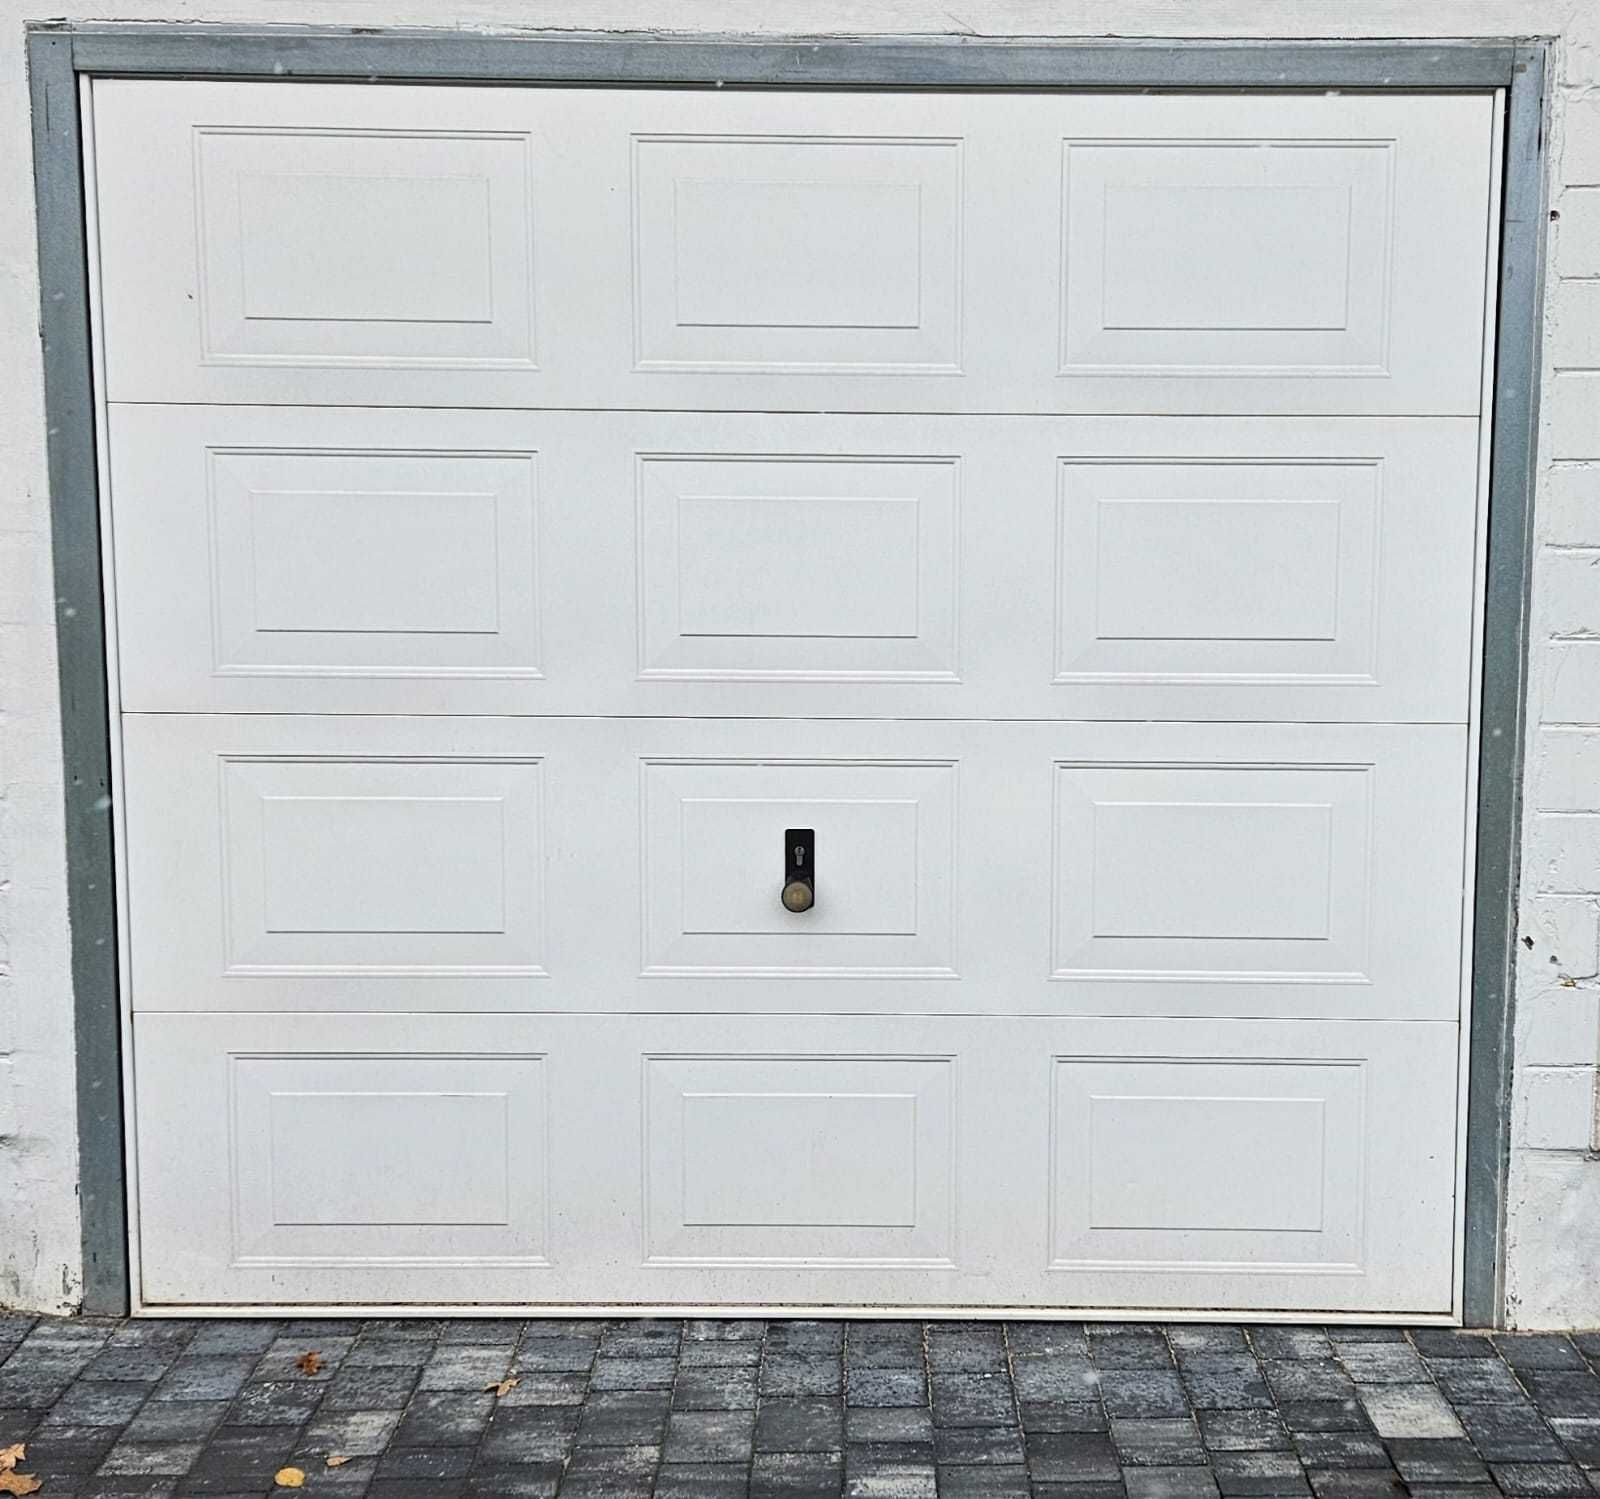 Brama garażowa biała Hormann